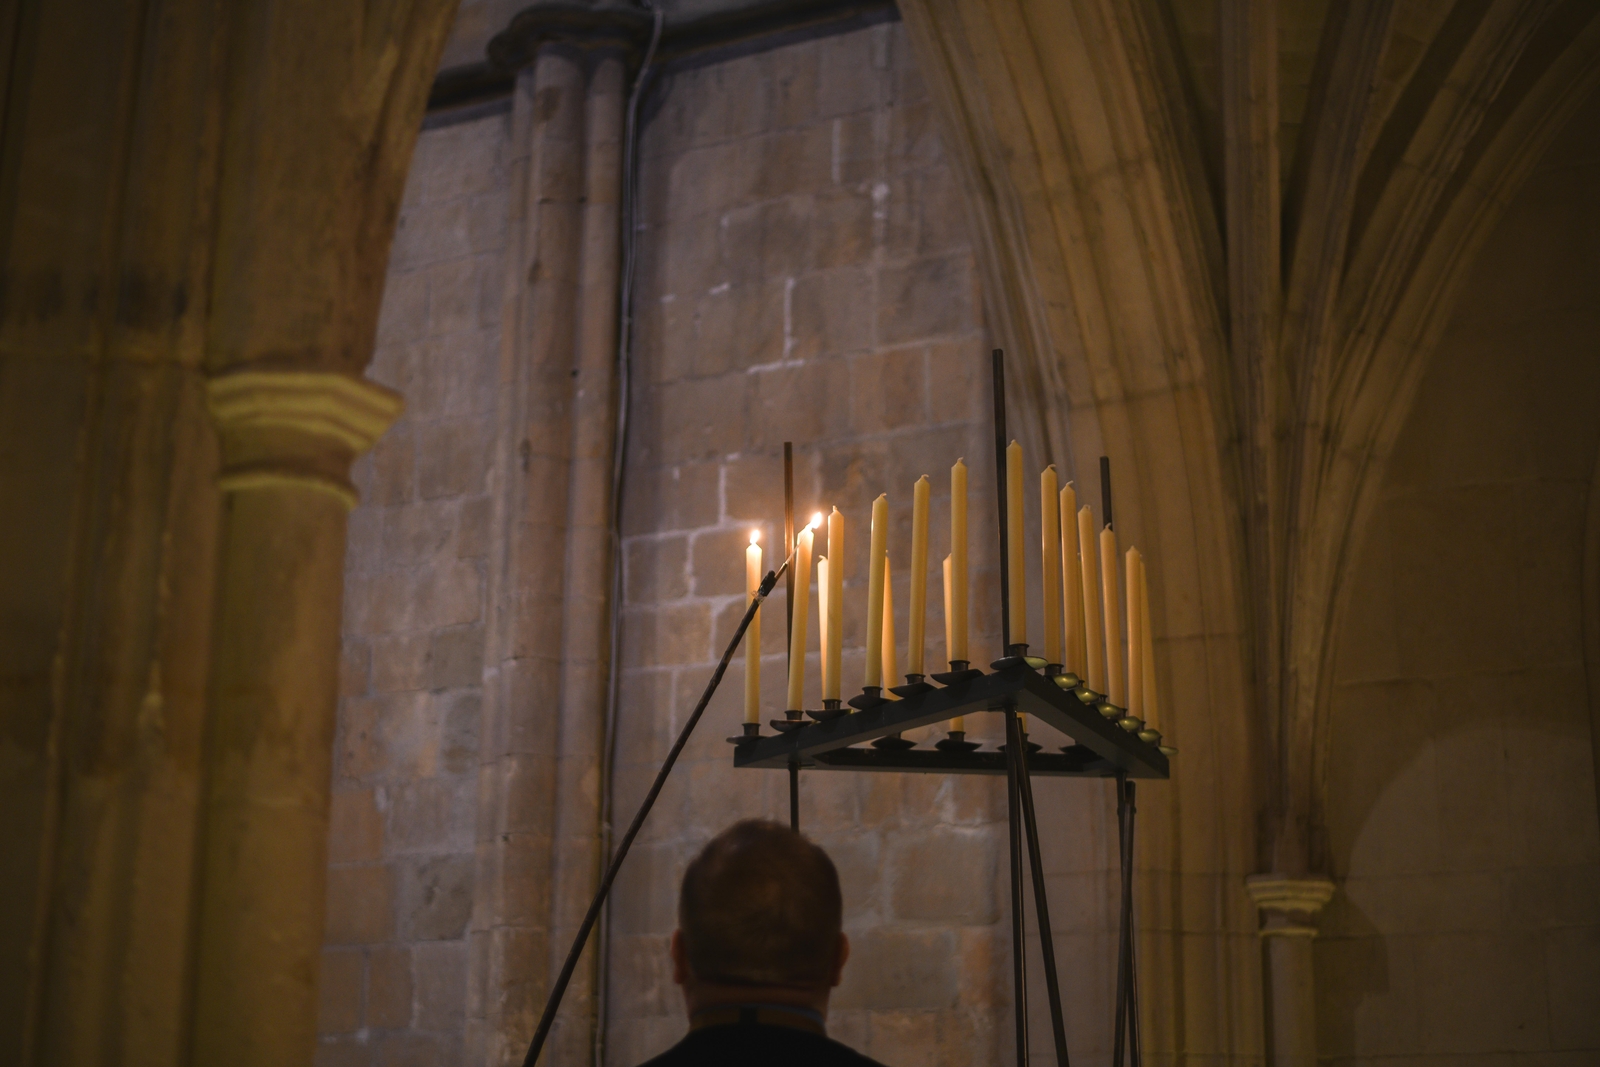 A Verger lights tall candles using a long taper